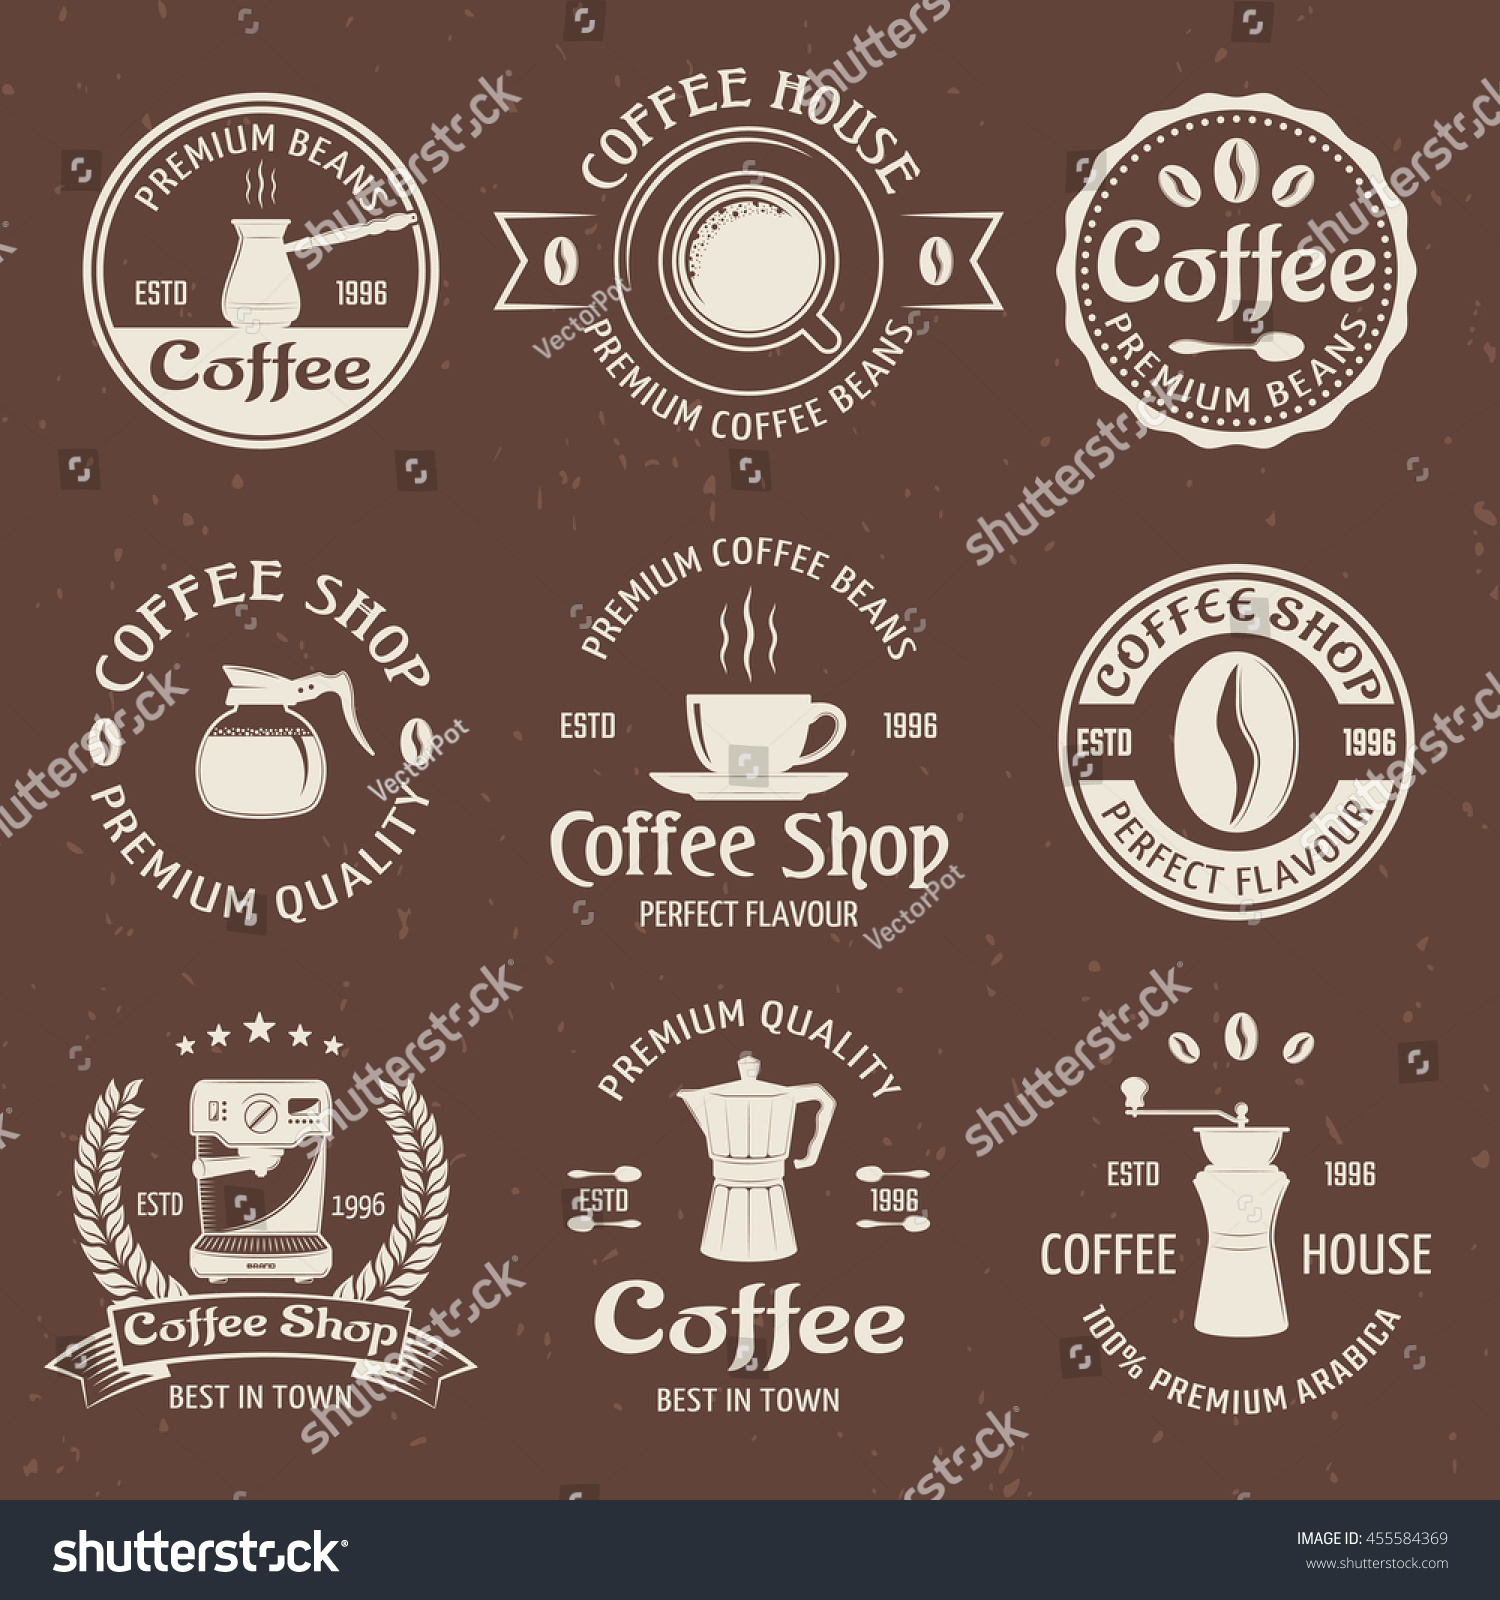 coffee descriptions